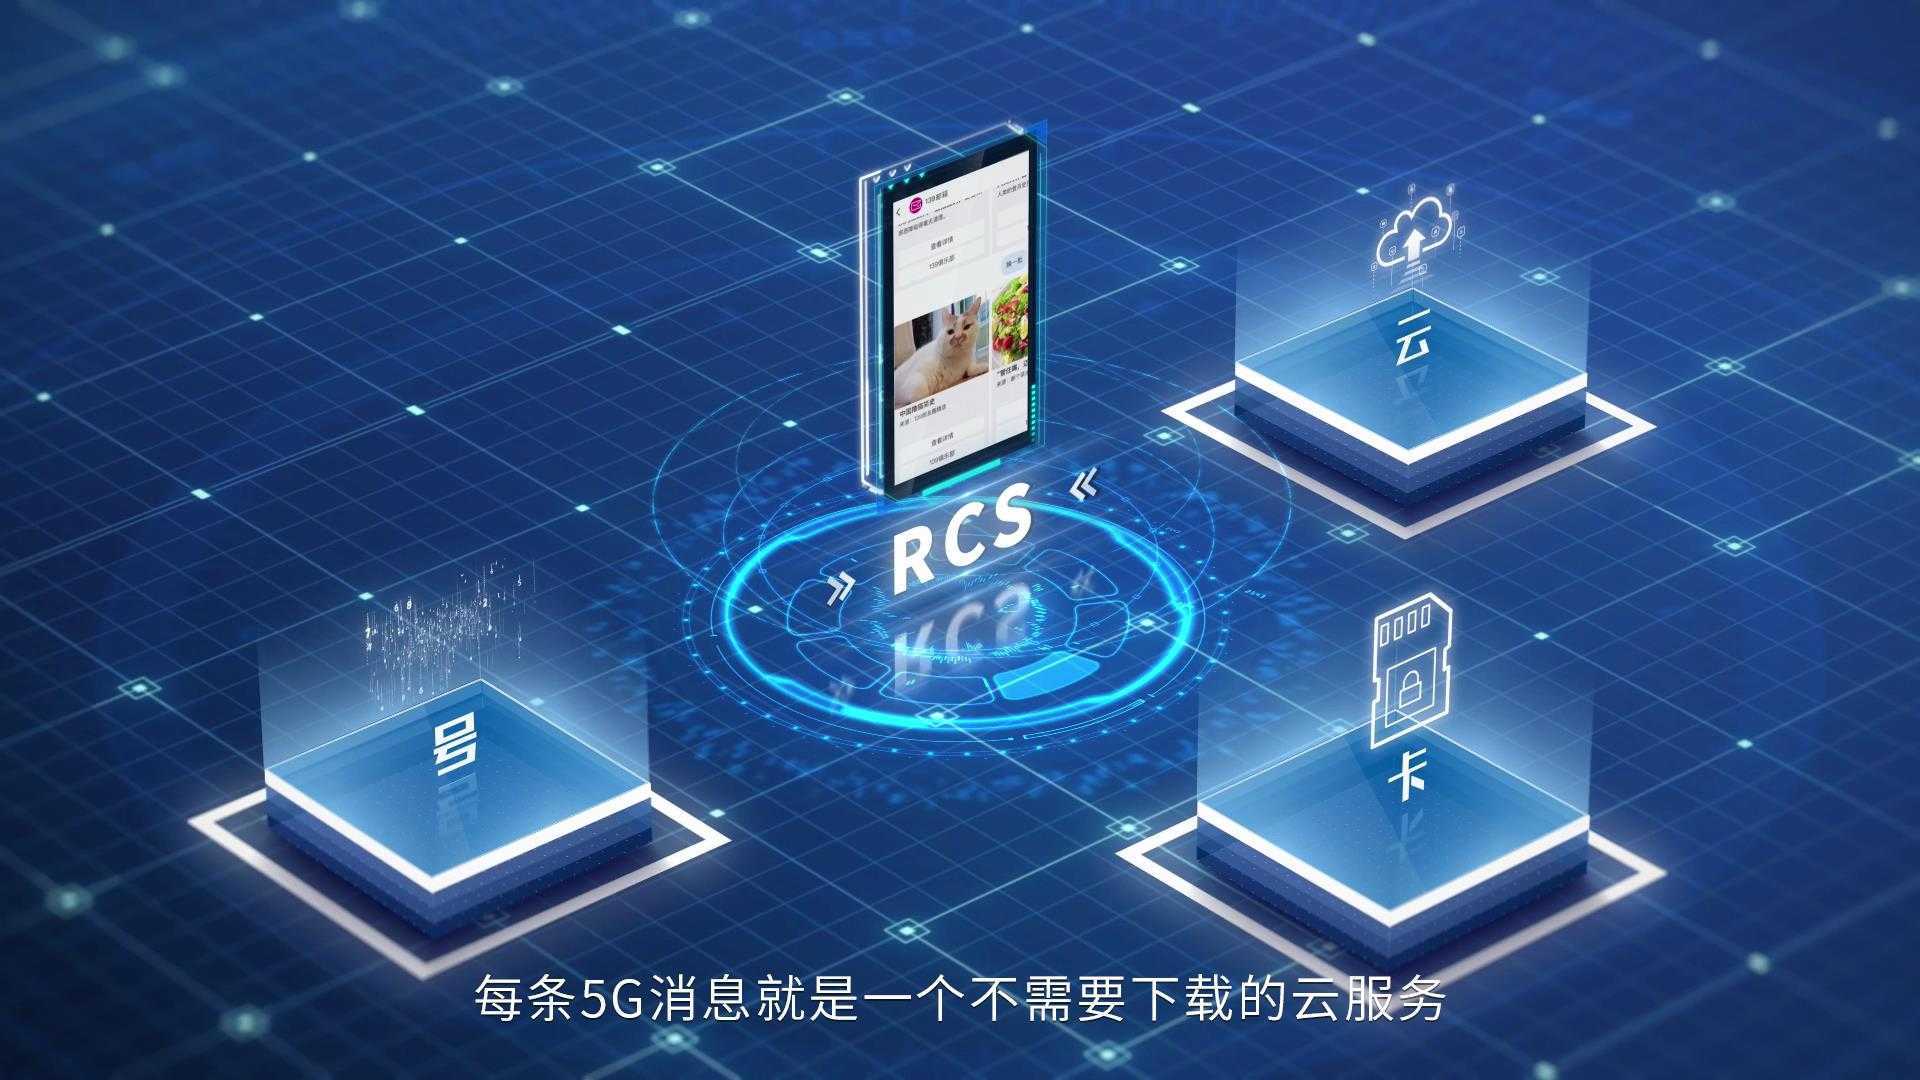 中国移动5G消息应用场景宣传视频